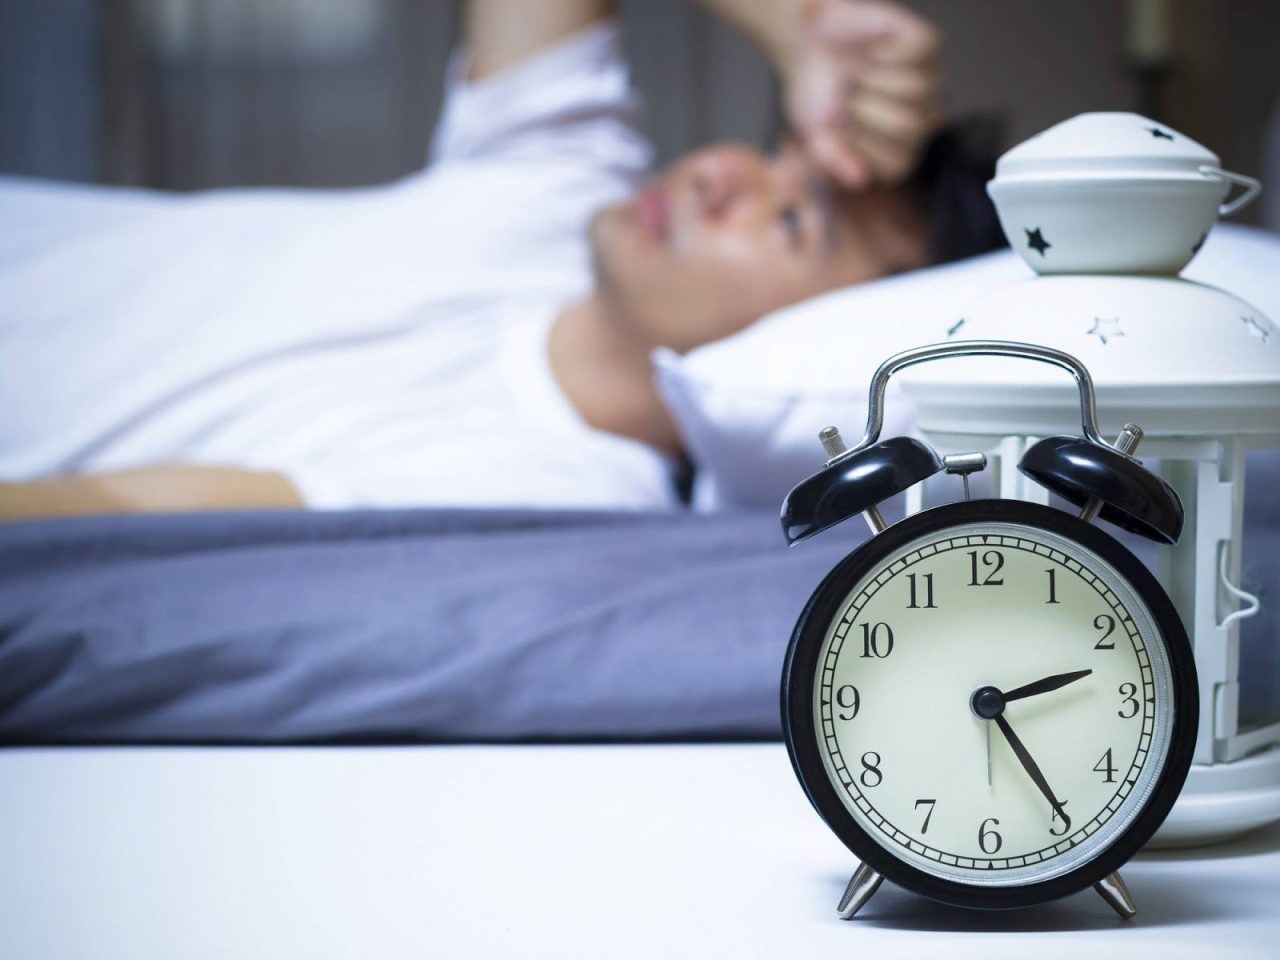 Tìm hiểu khó ngủ nguyên nhân và giải pháp điều trị hiệu quả